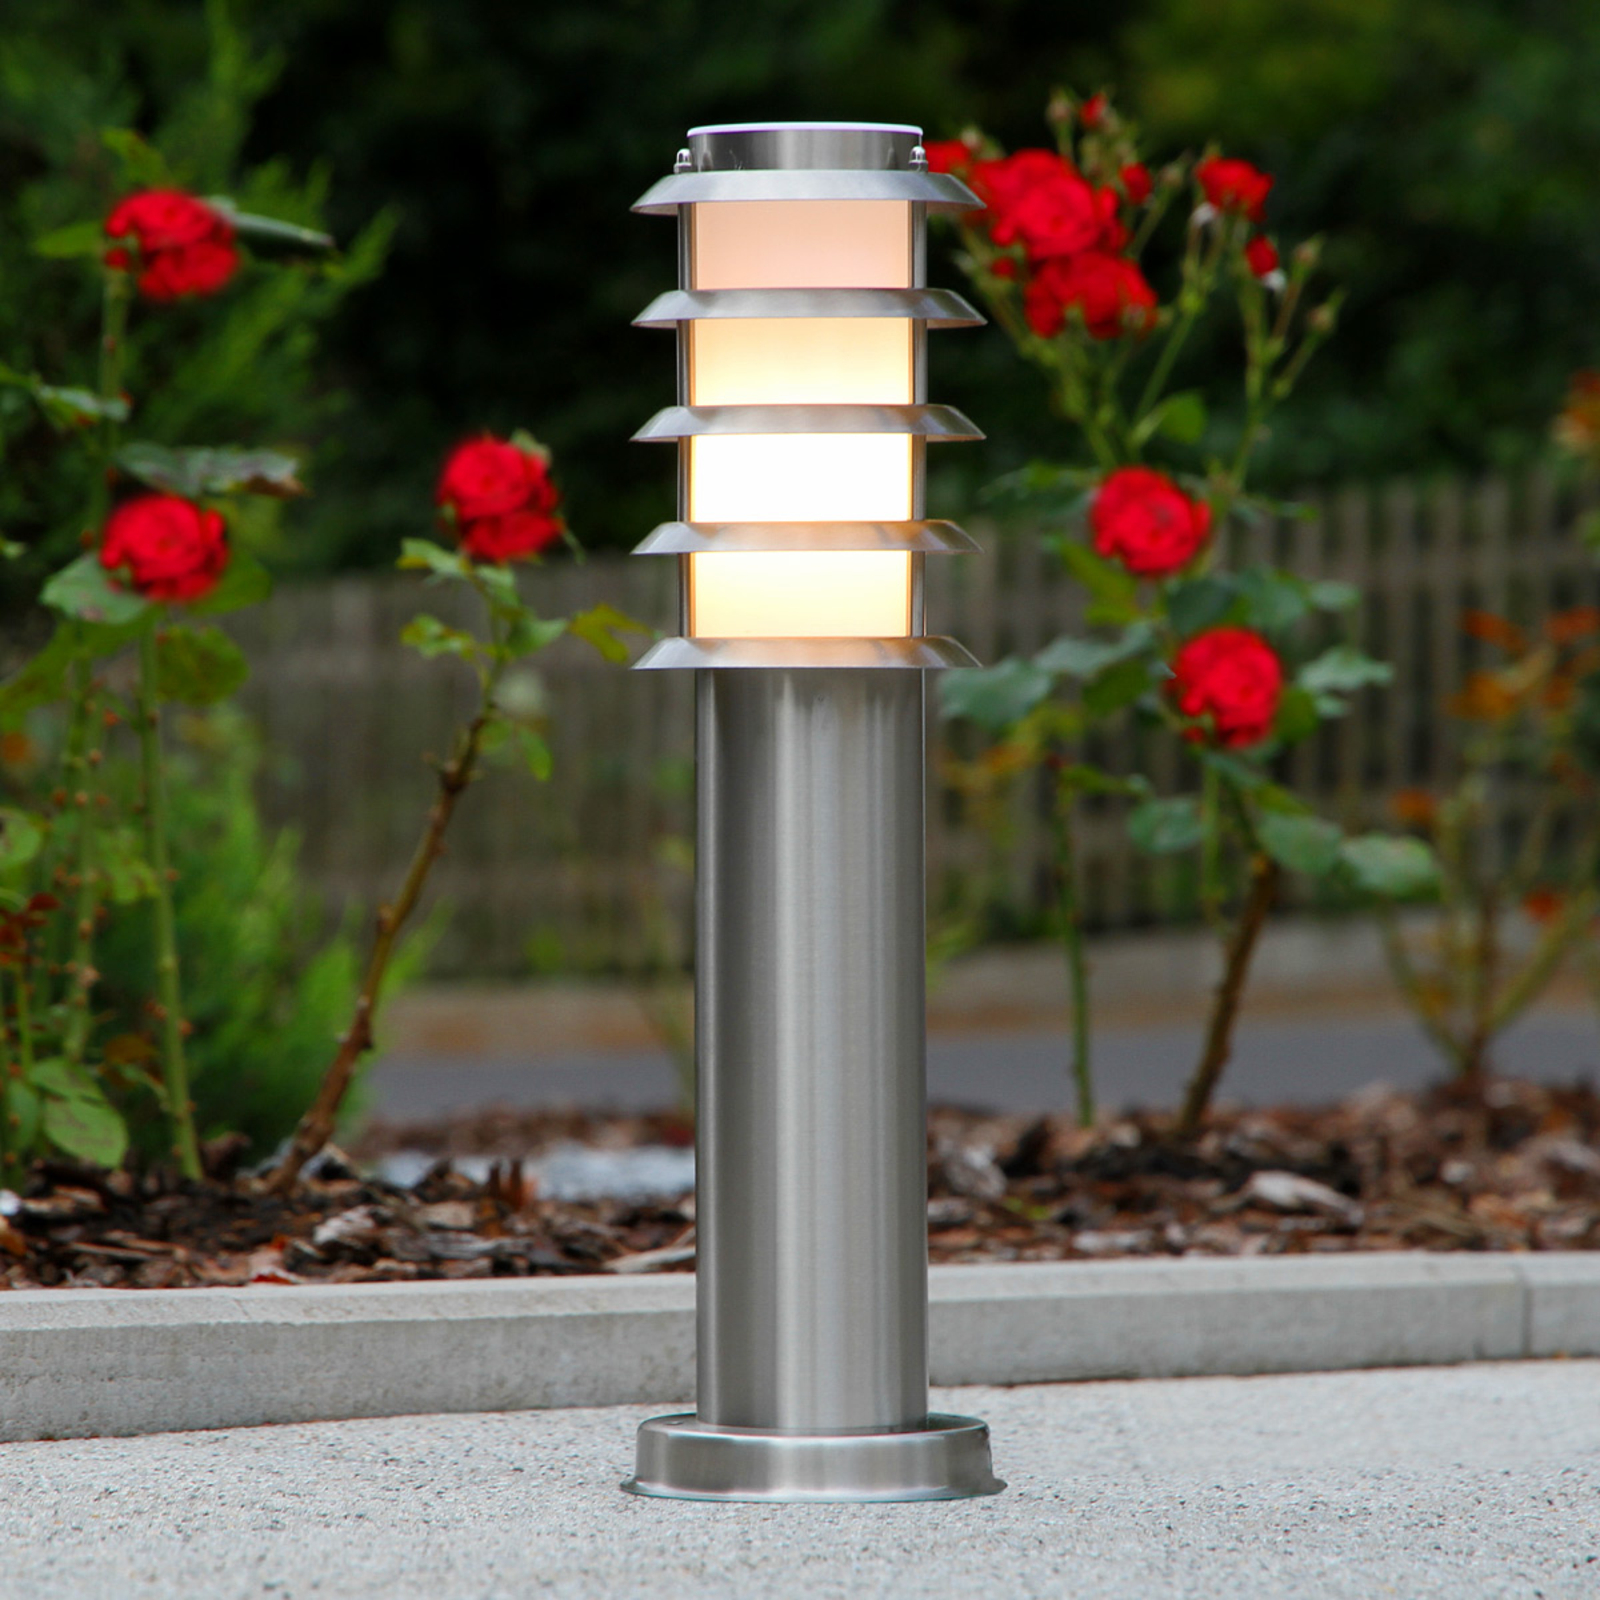 Stainless steel pillar light Selina